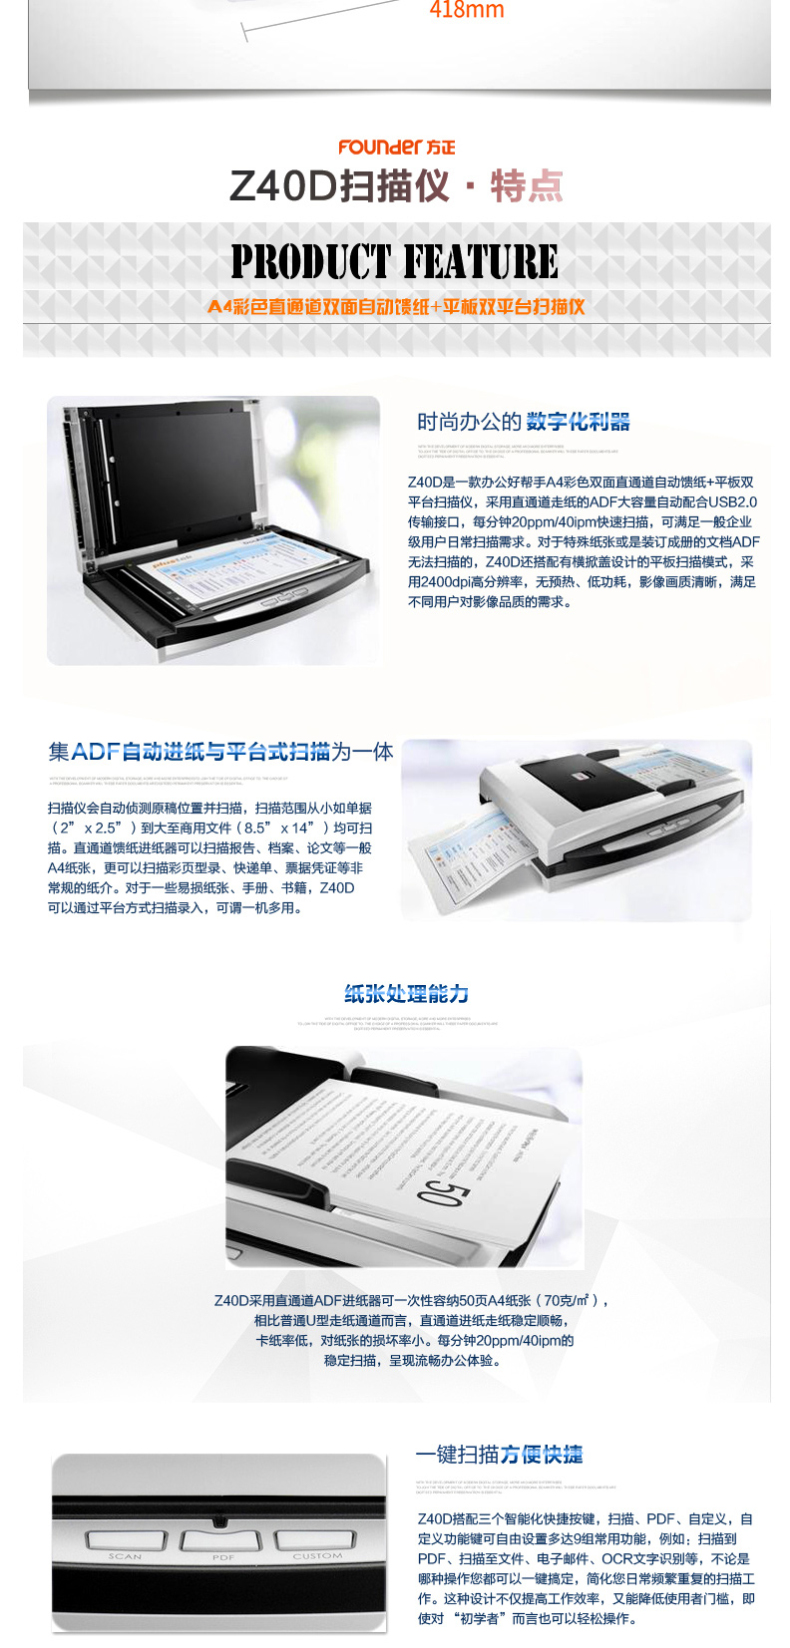 方正 Founder 双平台高速文档扫描仪 Z40D 